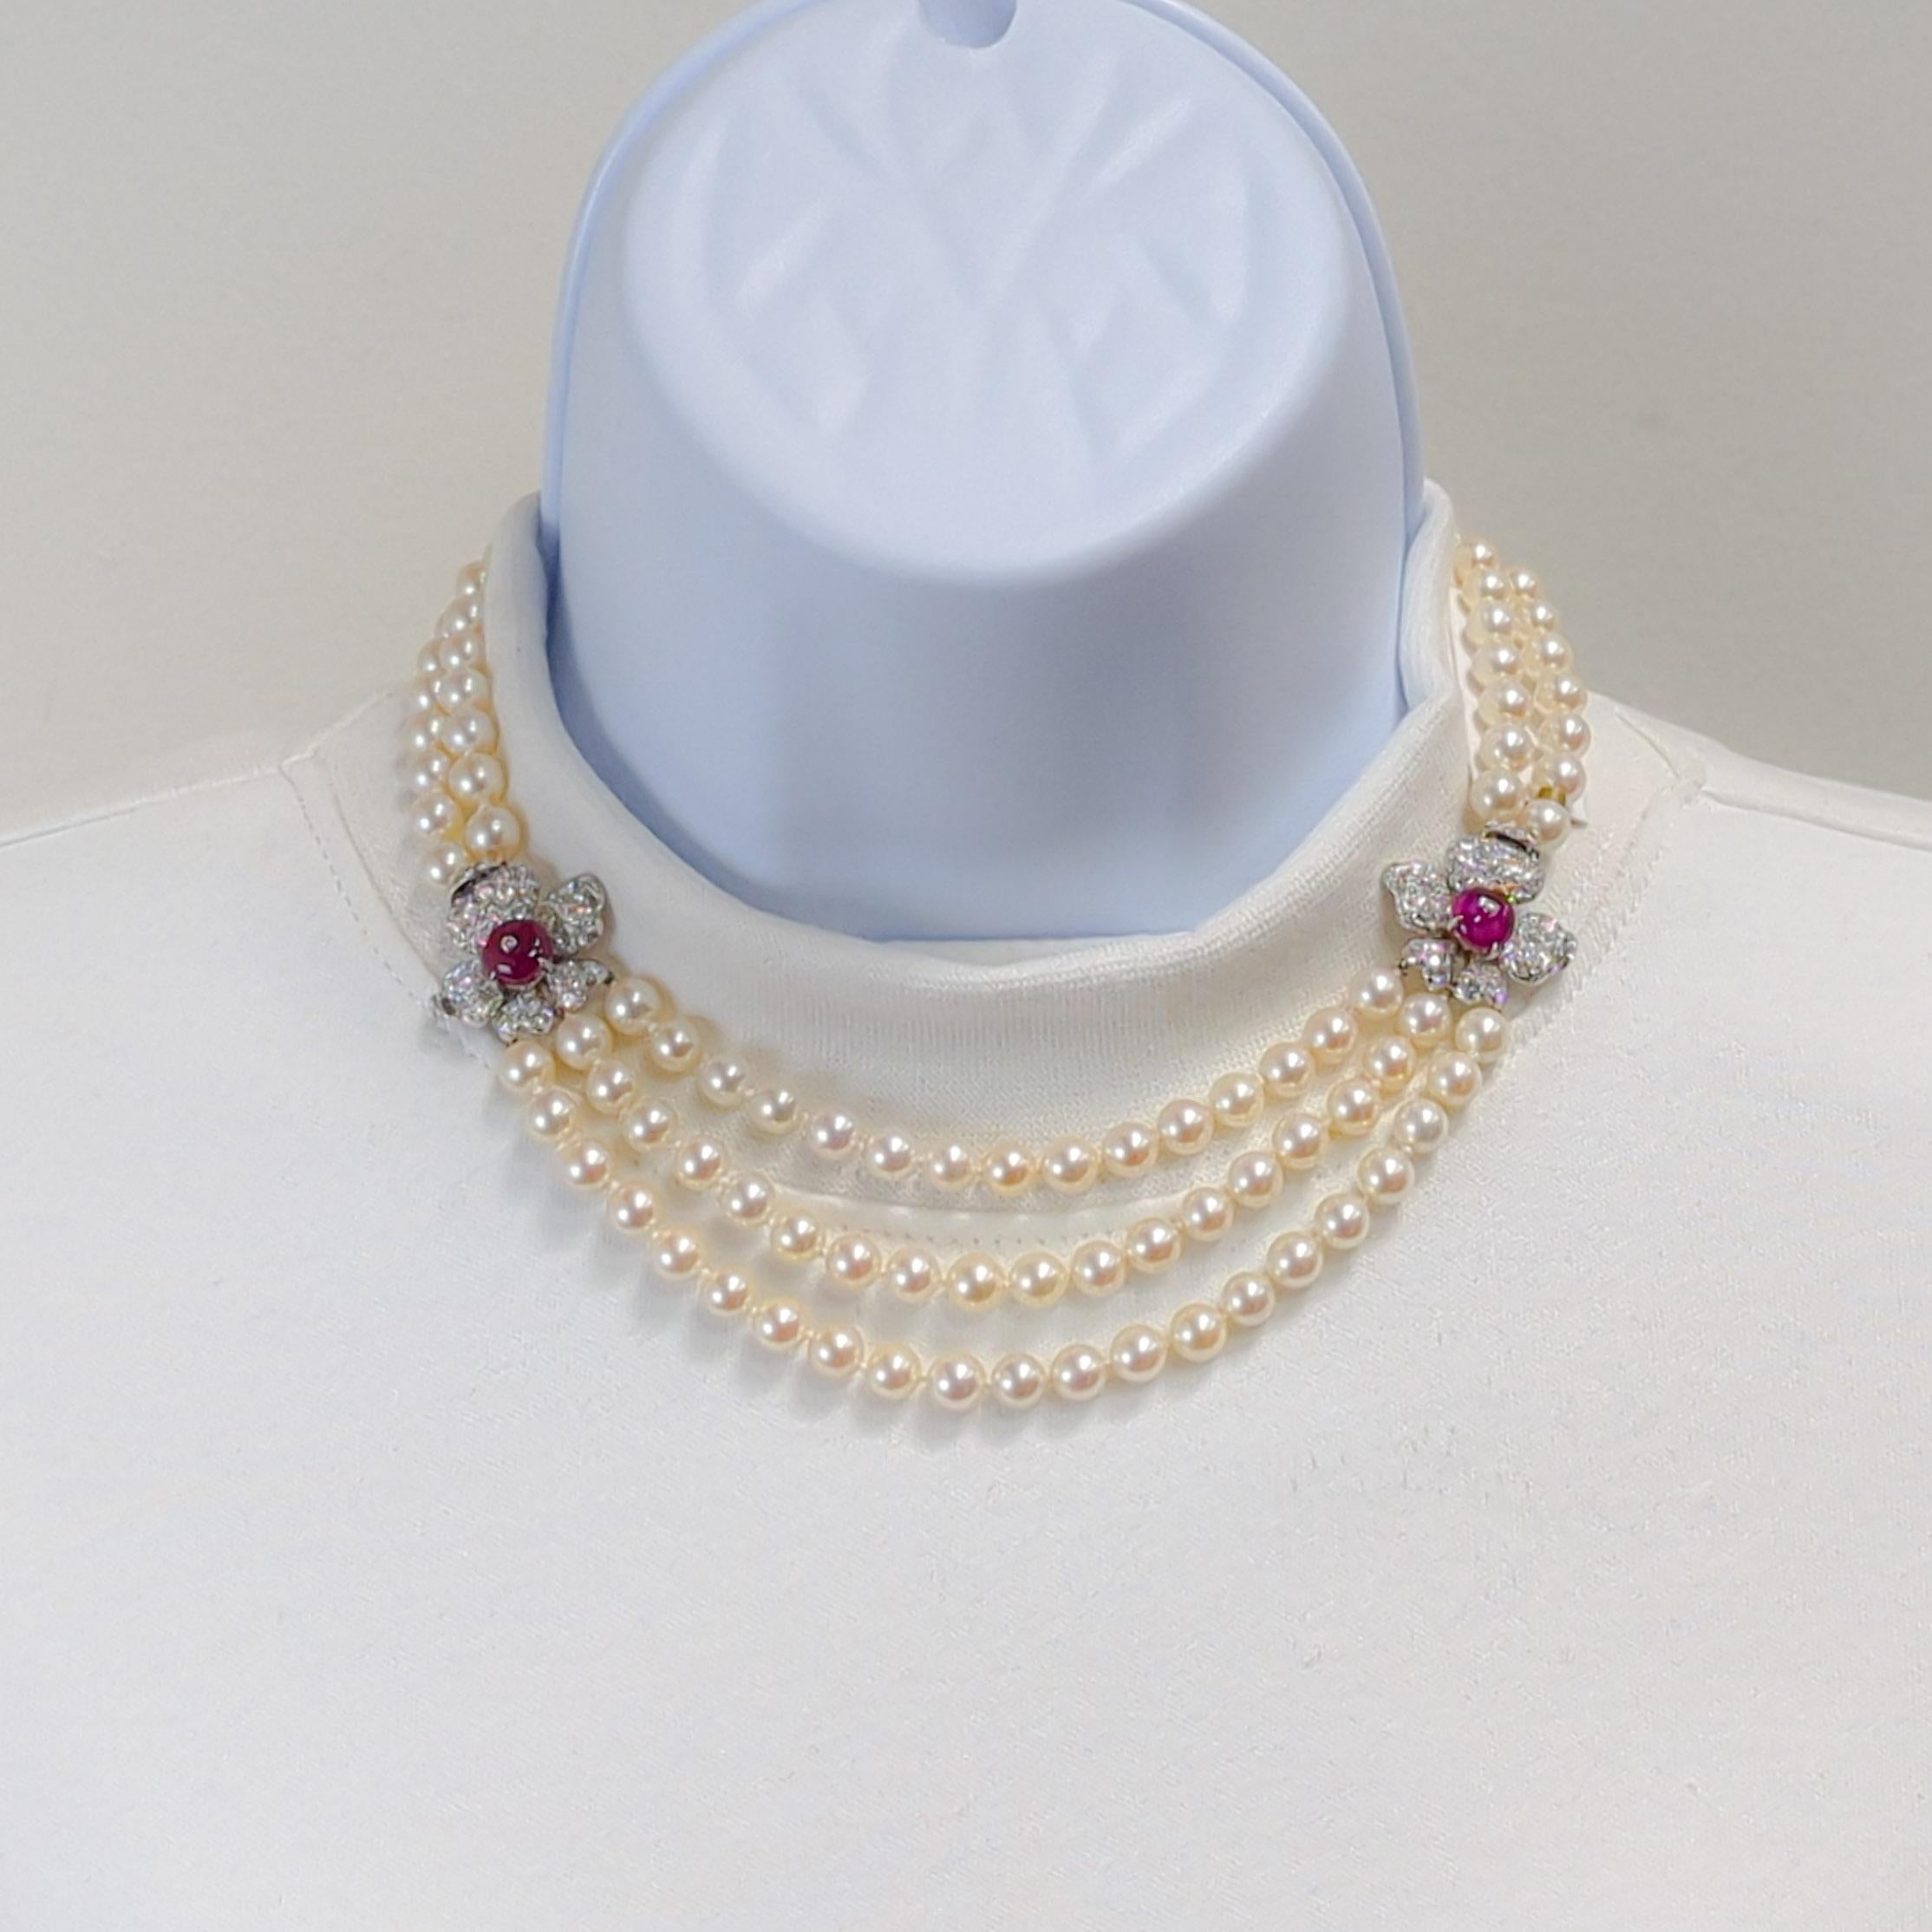 Magnifique collier de perles blanches Marianne Ostier avec des rubis birmans non chauffés certifiés AGL et des diamants blancs de bonne qualité.  Fabriqué à la main en platine avec une grande attention aux détails.  La longueur est de 16